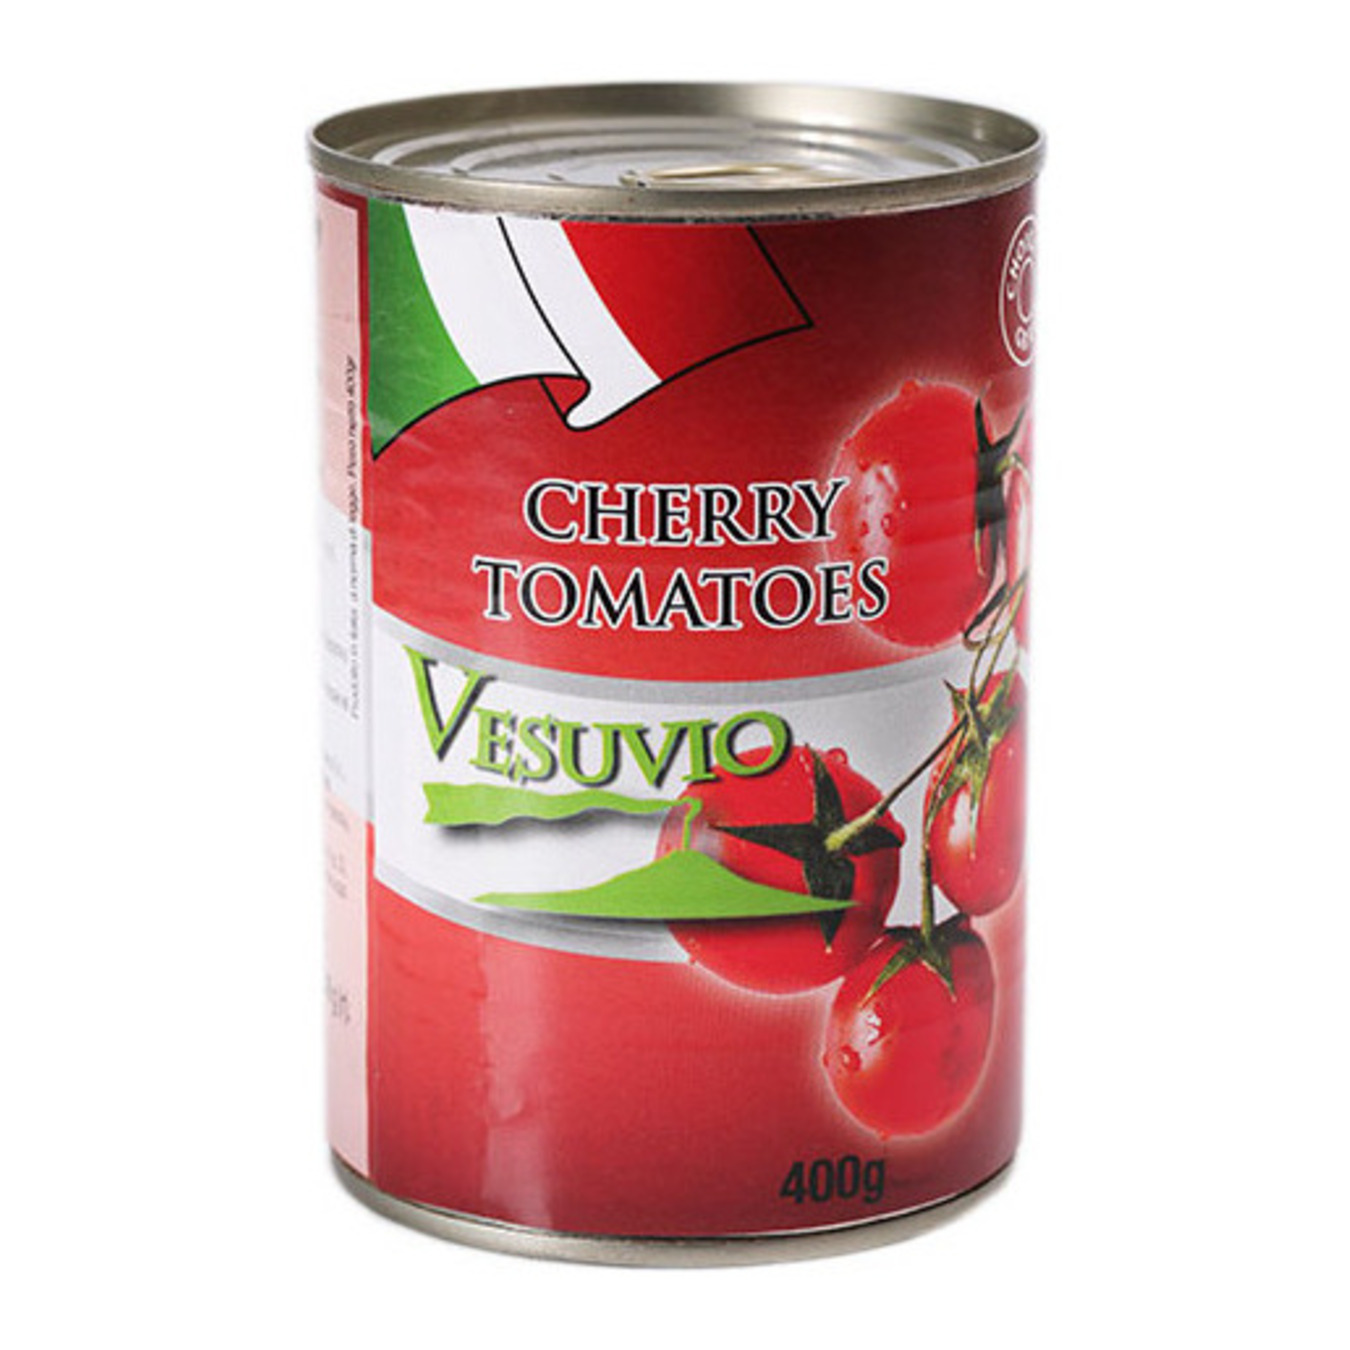 Tomatoes Cherry Vesuvio In Tomato Juice 400g